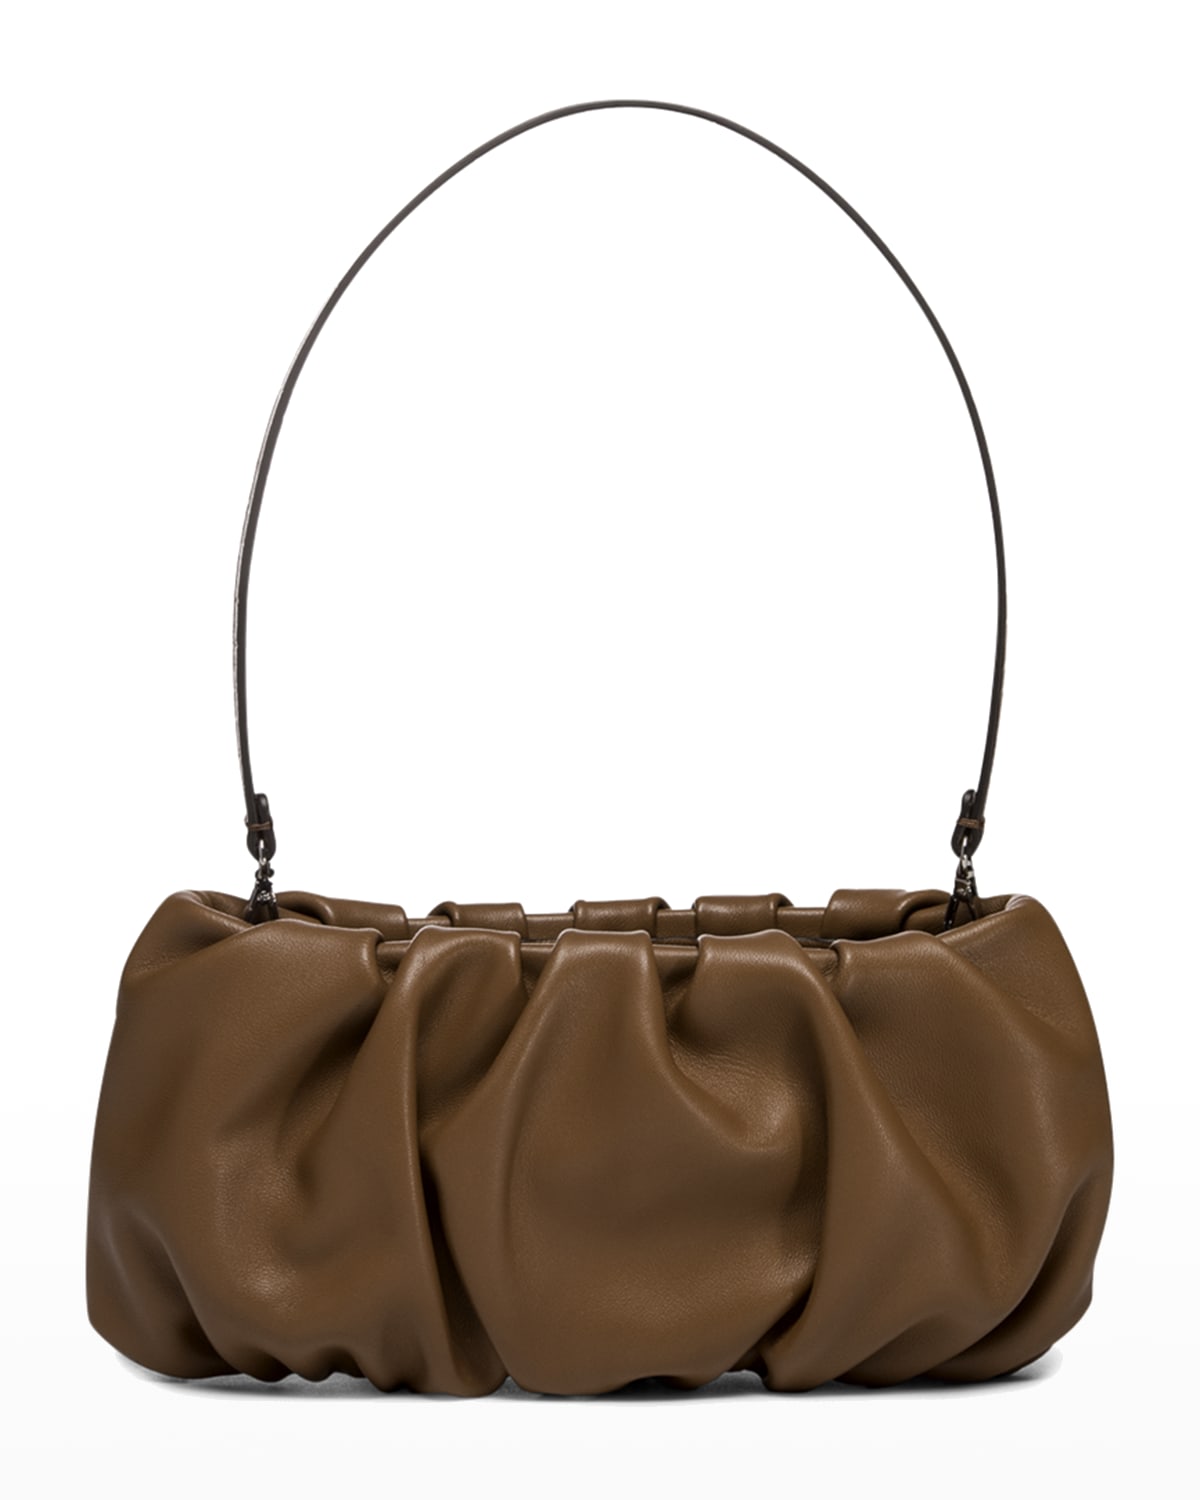 Faux Leather Antique Effect Clutch Bag Woven Trim Handbag Womens Evening Design 